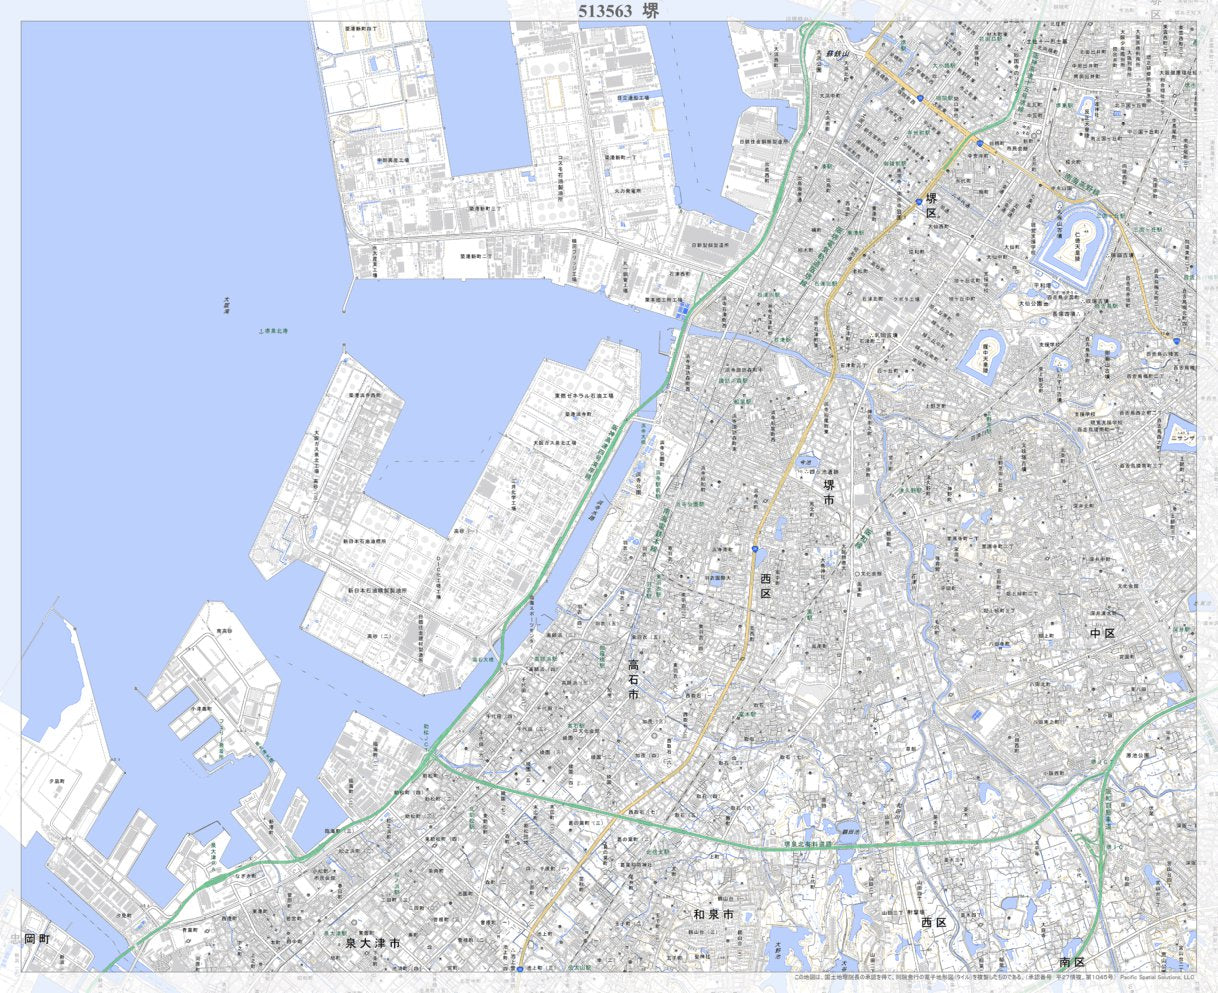 513563 堺（さかい Sakai）, 地形図 Map by Pacific Spatial Solutions 